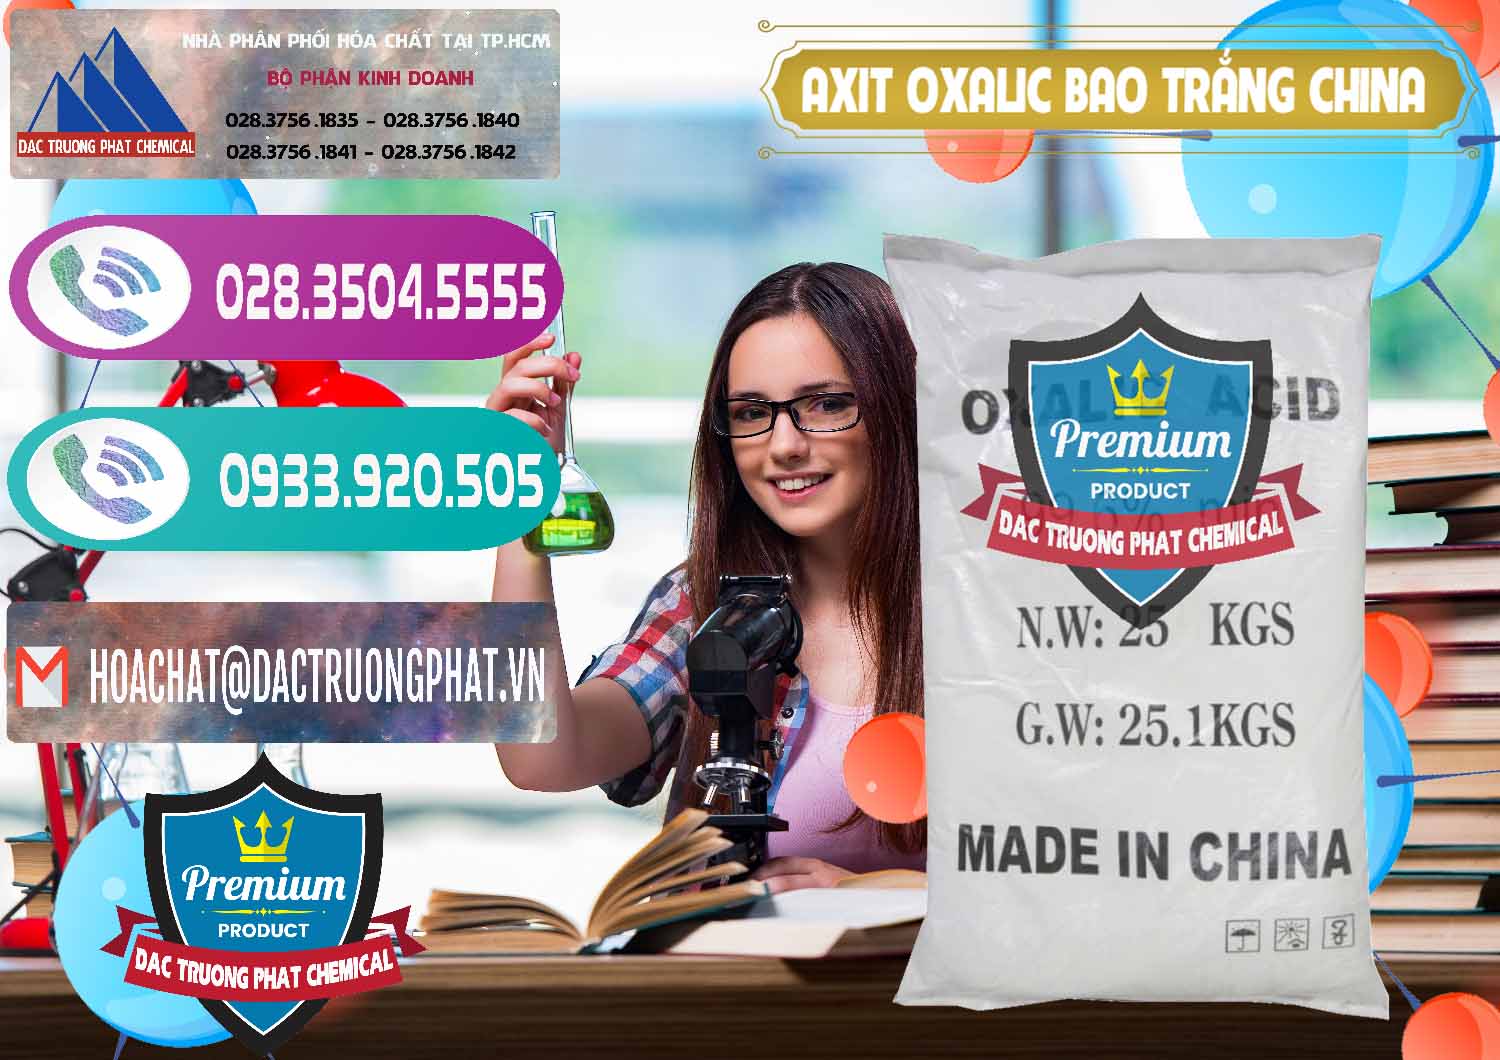 Chuyên nhập khẩu - bán Acid Oxalic – Axit Oxalic 99.6% Bao Trắng Trung Quốc China - 0270 - Đơn vị cung cấp & nhập khẩu hóa chất tại TP.HCM - hoachatxulynuoc.com